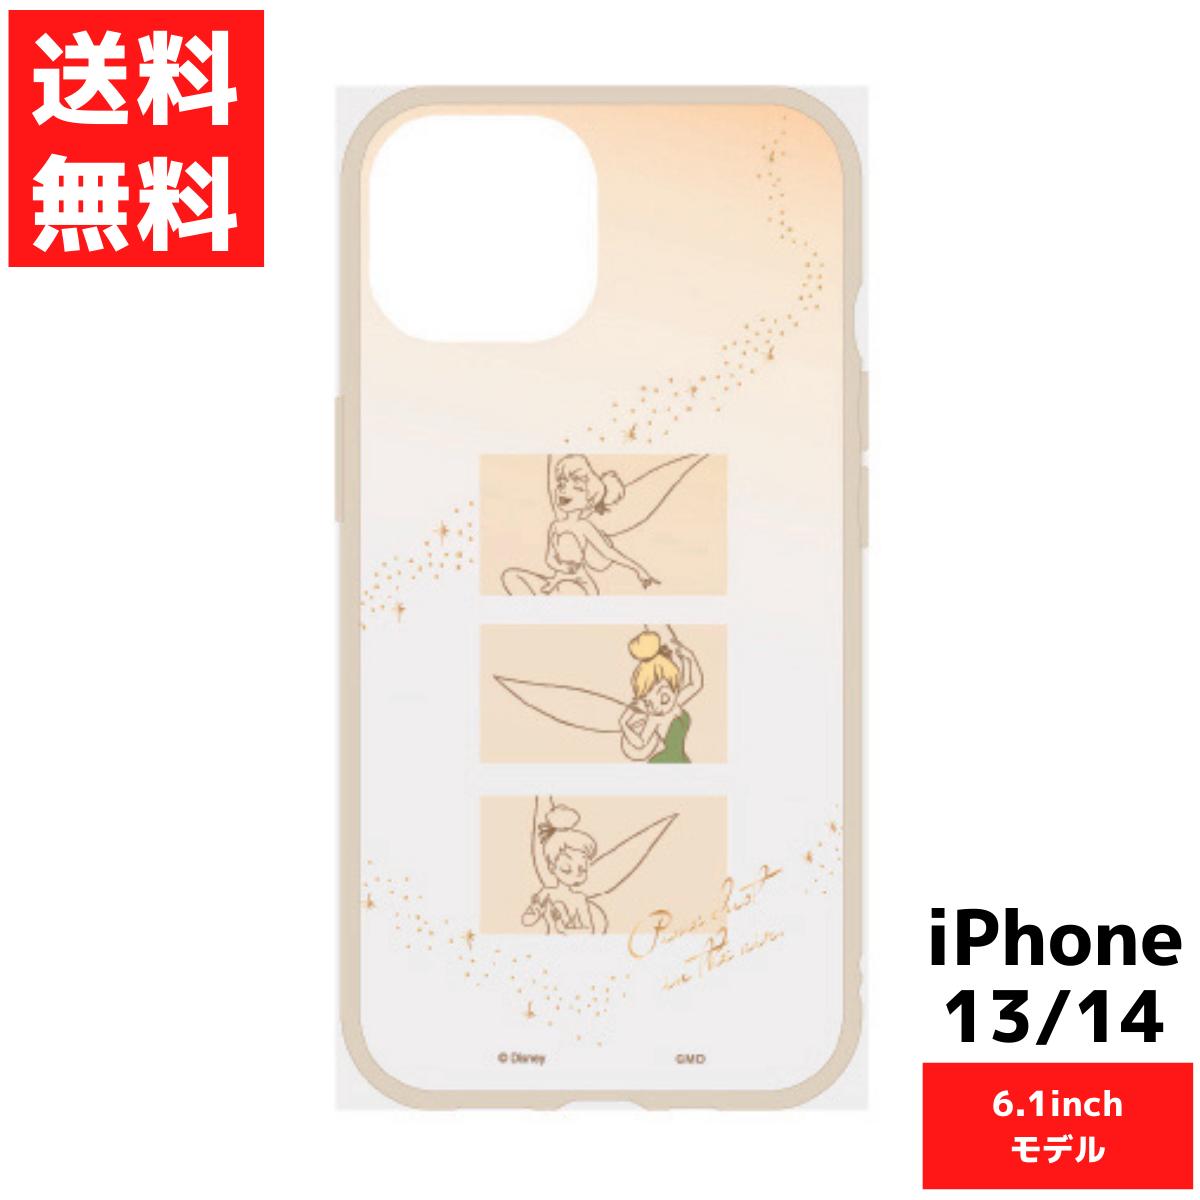 ティンカー・ベル ディズニー IIII fit Clear iPhone14 13対応ケース 6.1inch アイフォン スマホ カバー